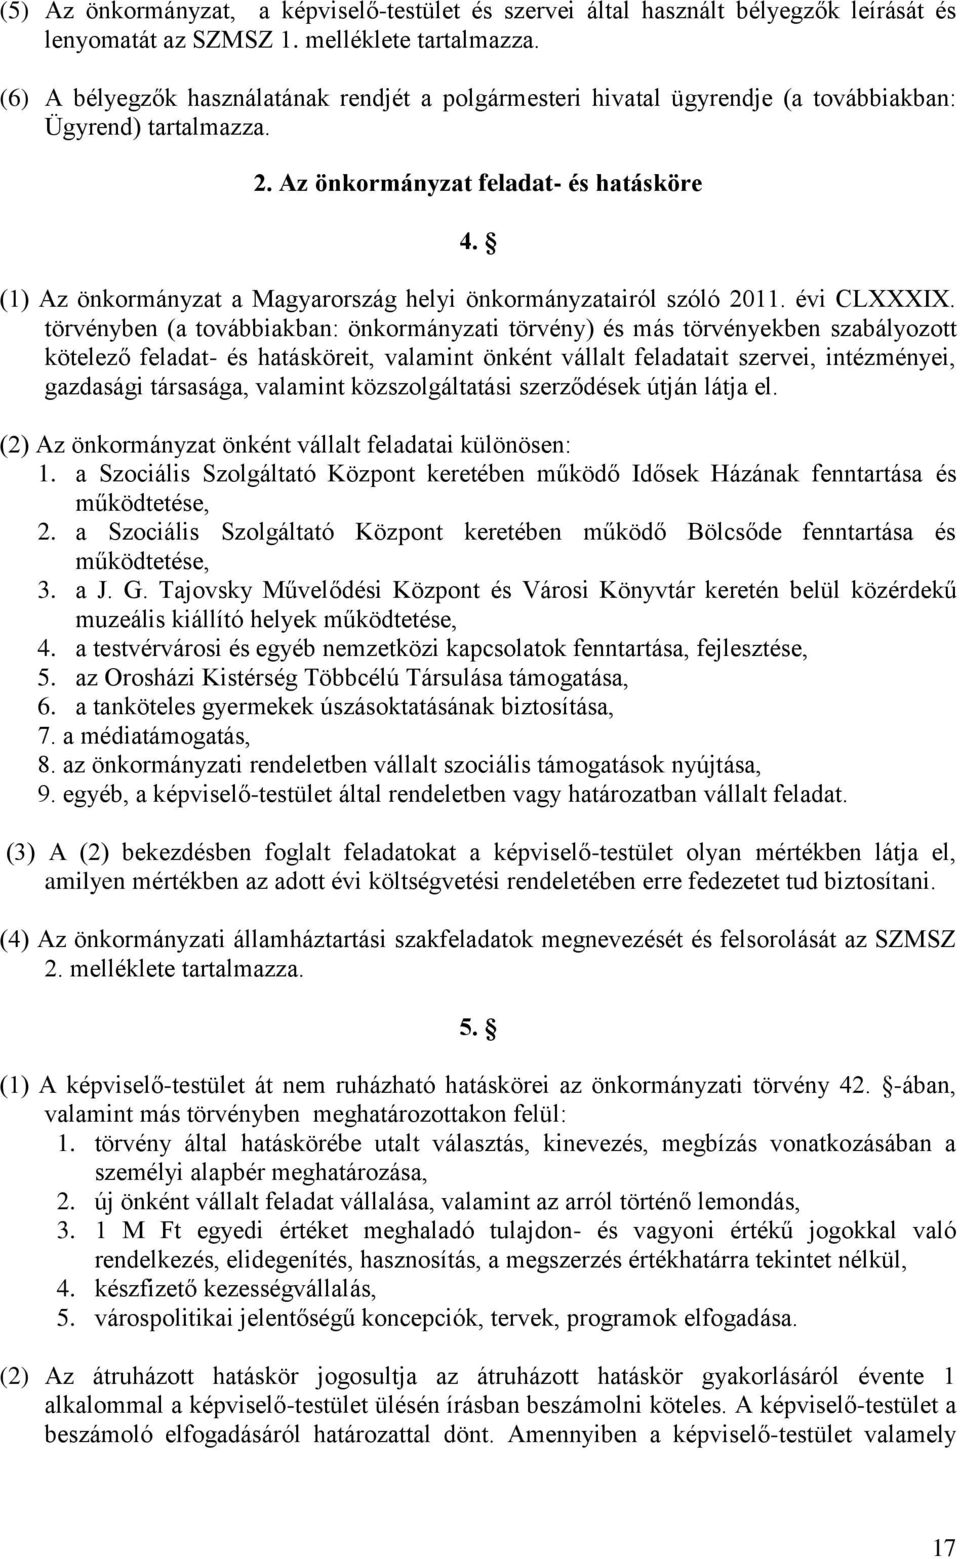 (1) Az önkormányzat a Magyarország helyi önkormányzatairól szóló 2011. évi CLXXXIX.